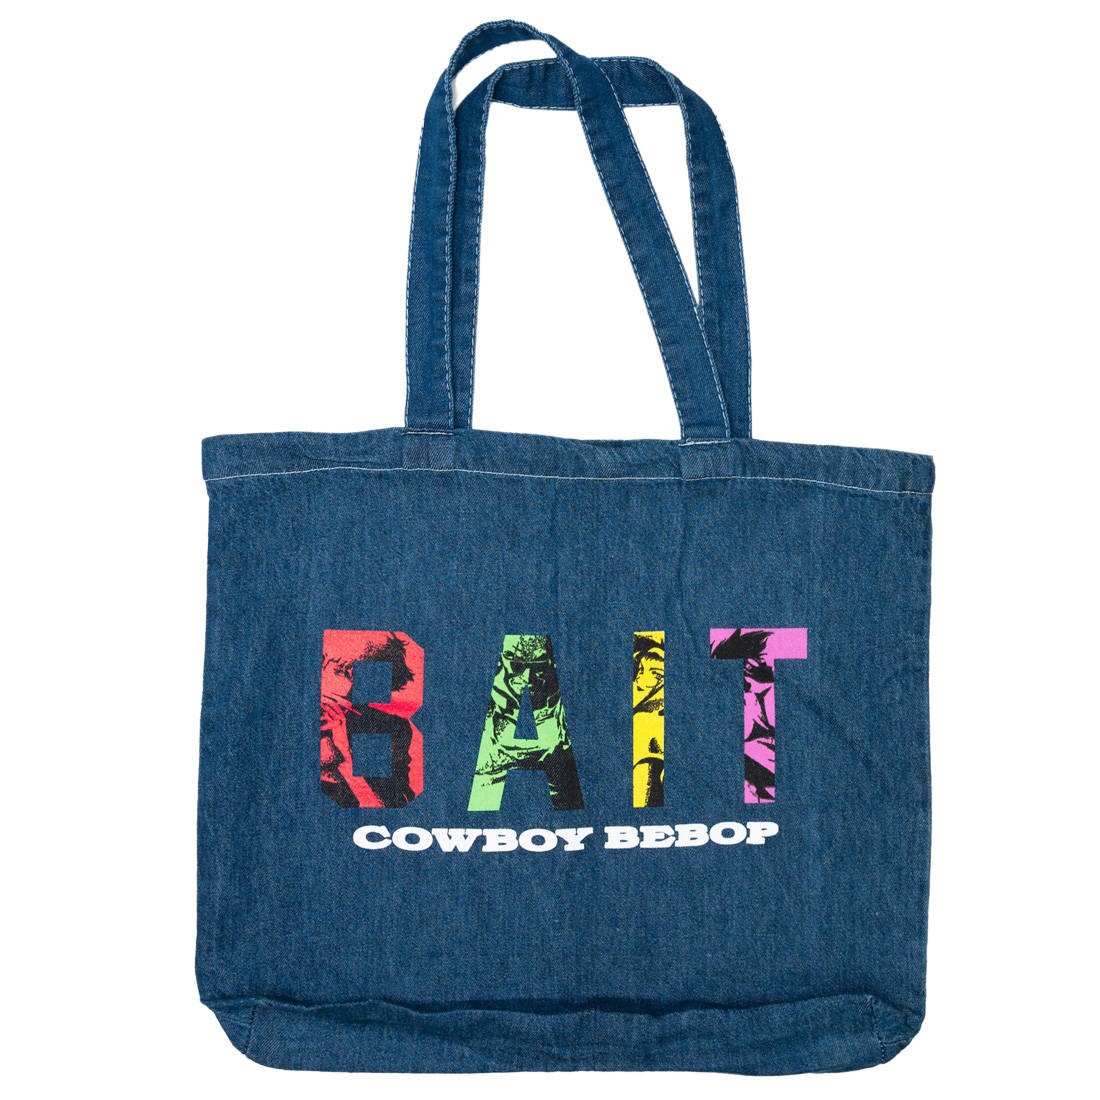 BAIT x Cowboy Bebop Tote Bag (blue / denim canvas)